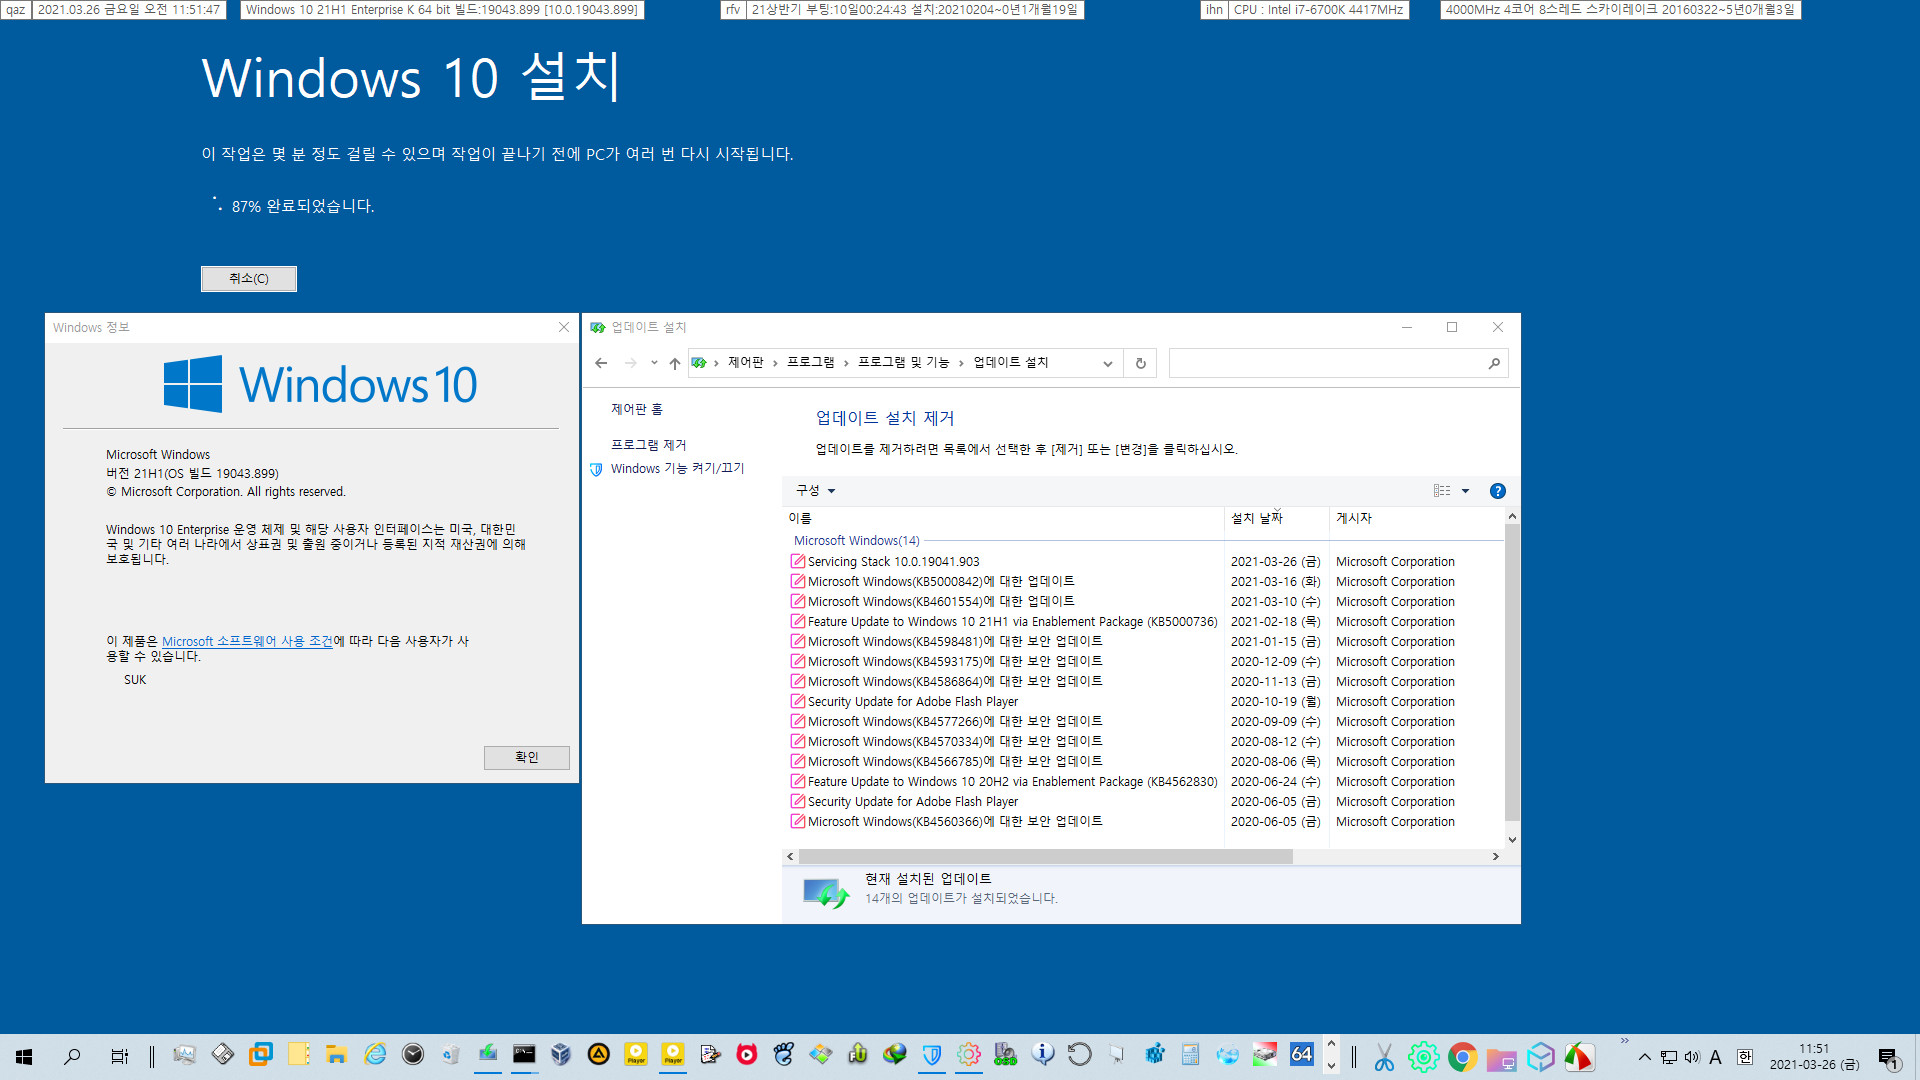 2021-03-26 베타 업데이트 - Windows 10 버전 21H1, 빌드 19043.906 - 공용 누적 업데이트 KB5000842 가 실컴에 설치되지 않아서 이런 이유로는 처음으로 통합본으로 업그레이드 방식으로 윈도우를 설치했습니다 2021-03-26_115147.jpg